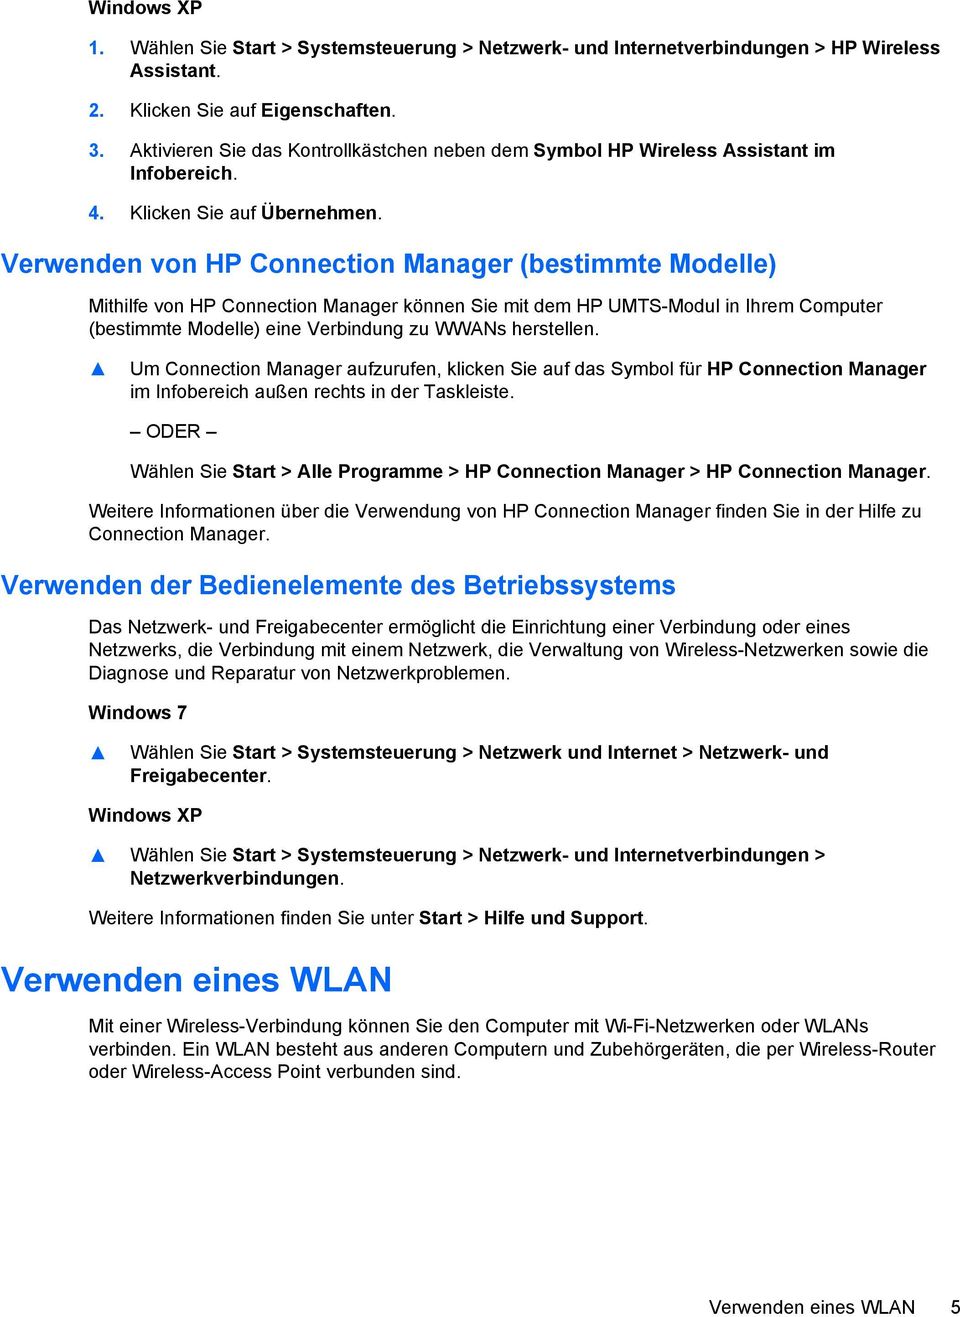 Verwenden von HP Connection Manager (bestimmte Modelle) Mithilfe von HP Connection Manager können Sie mit dem HP UMTS-Modul in Ihrem Computer (bestimmte Modelle) eine Verbindung zu WWANs herstellen.